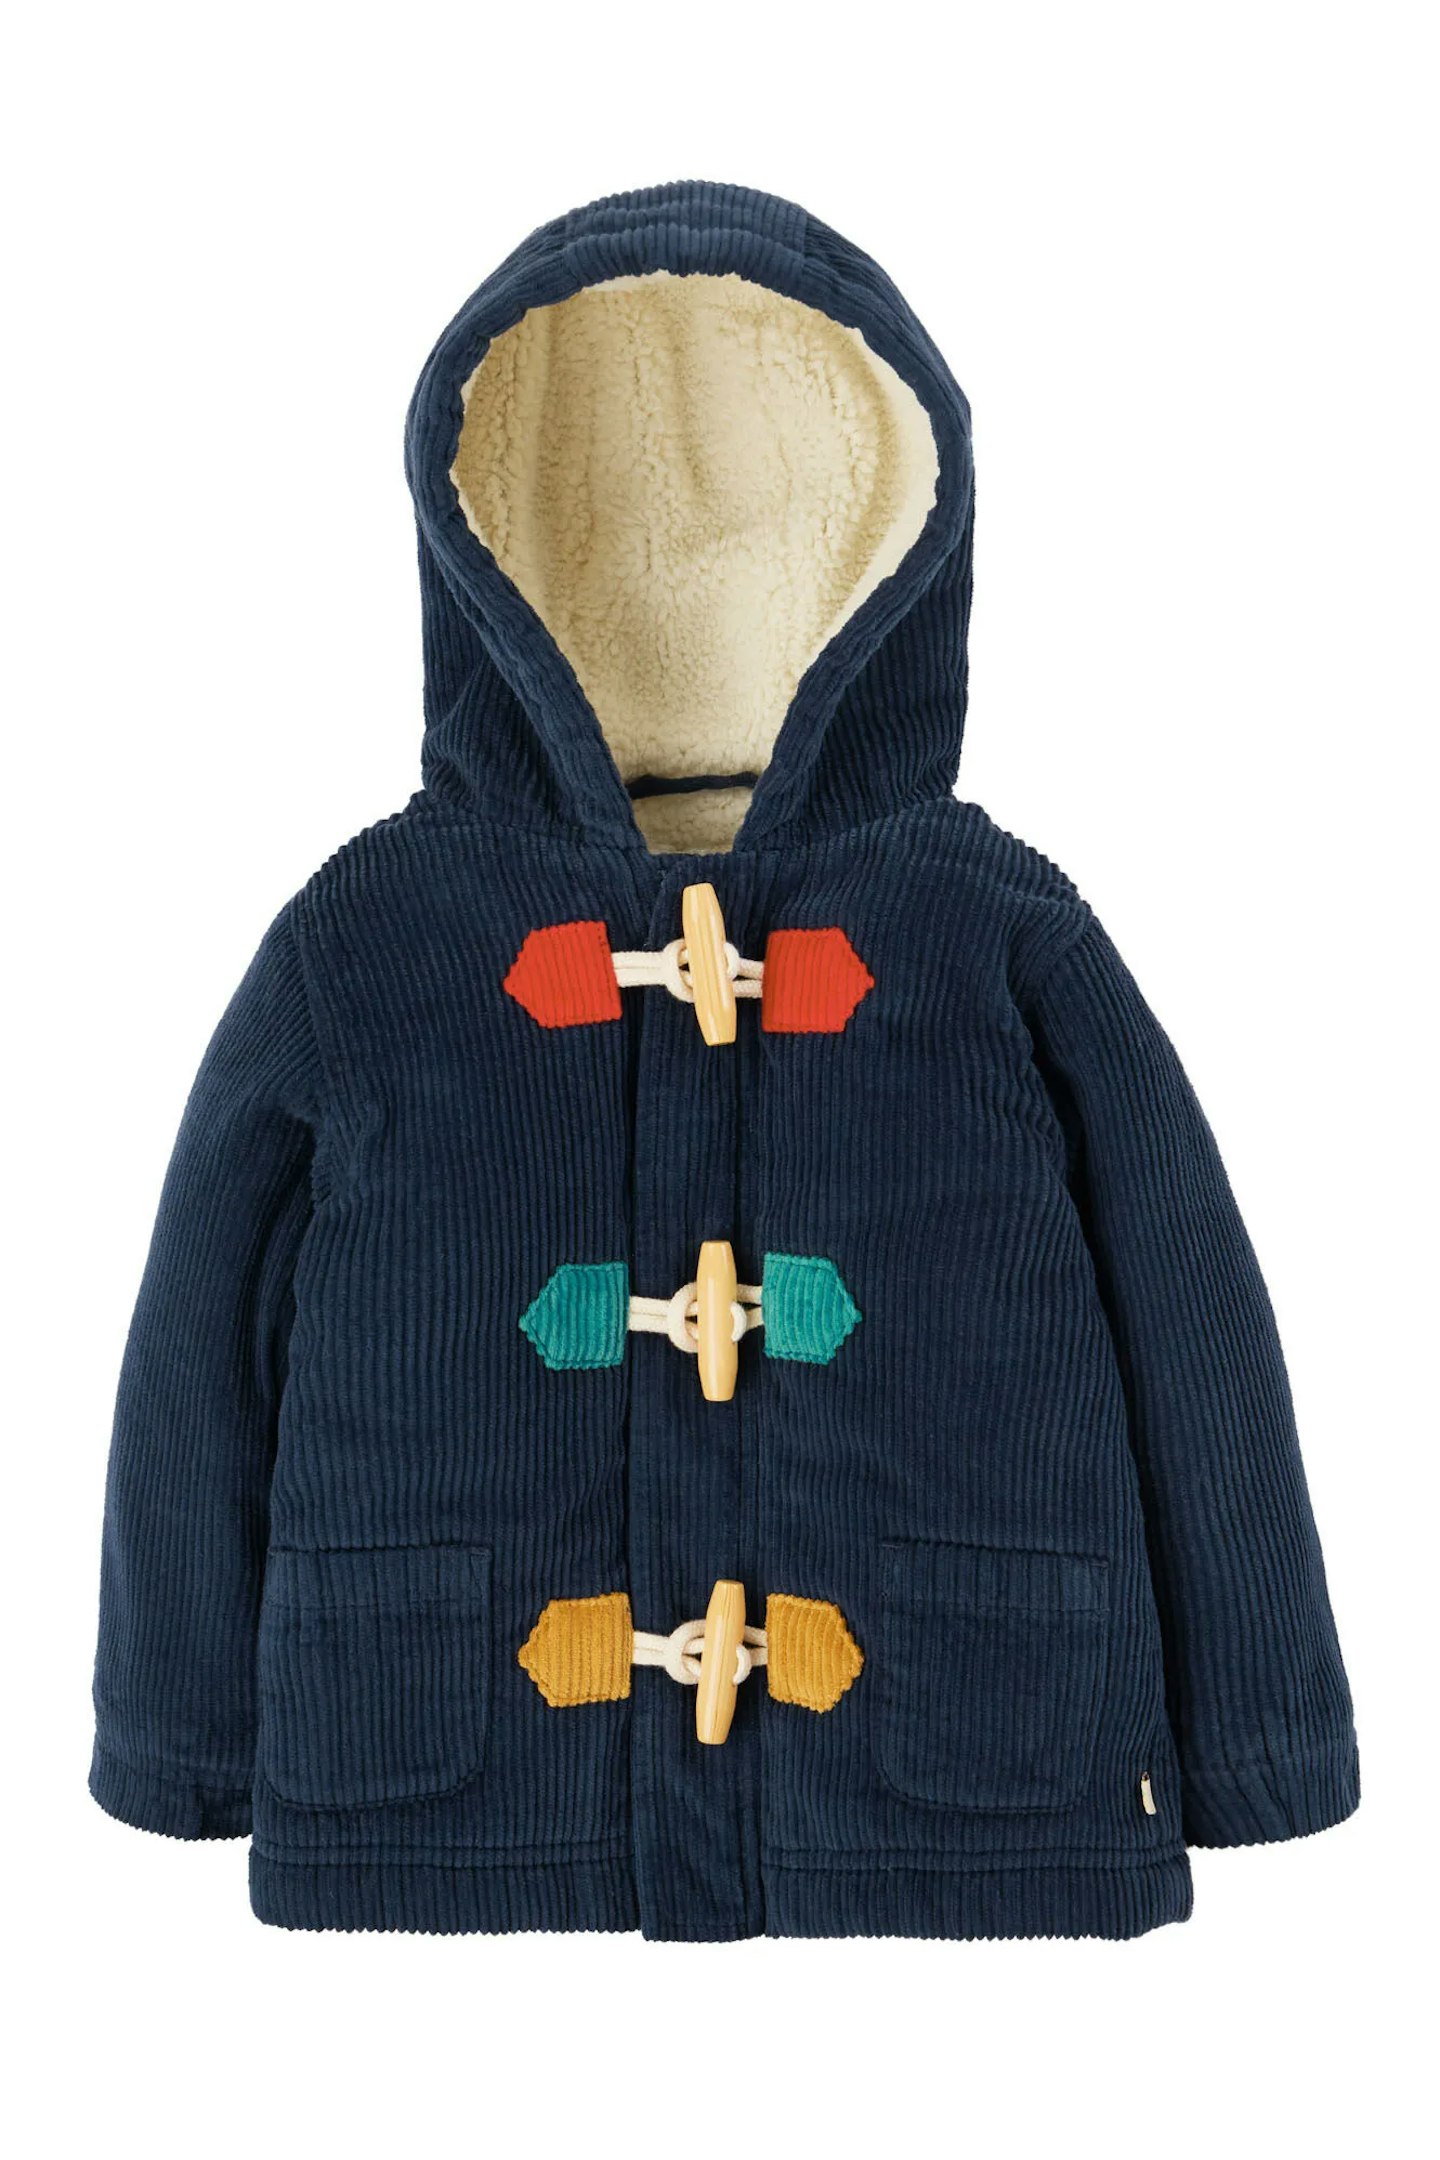 Best toddler winter coats Frugi Zephyr Cord Duffle Coat